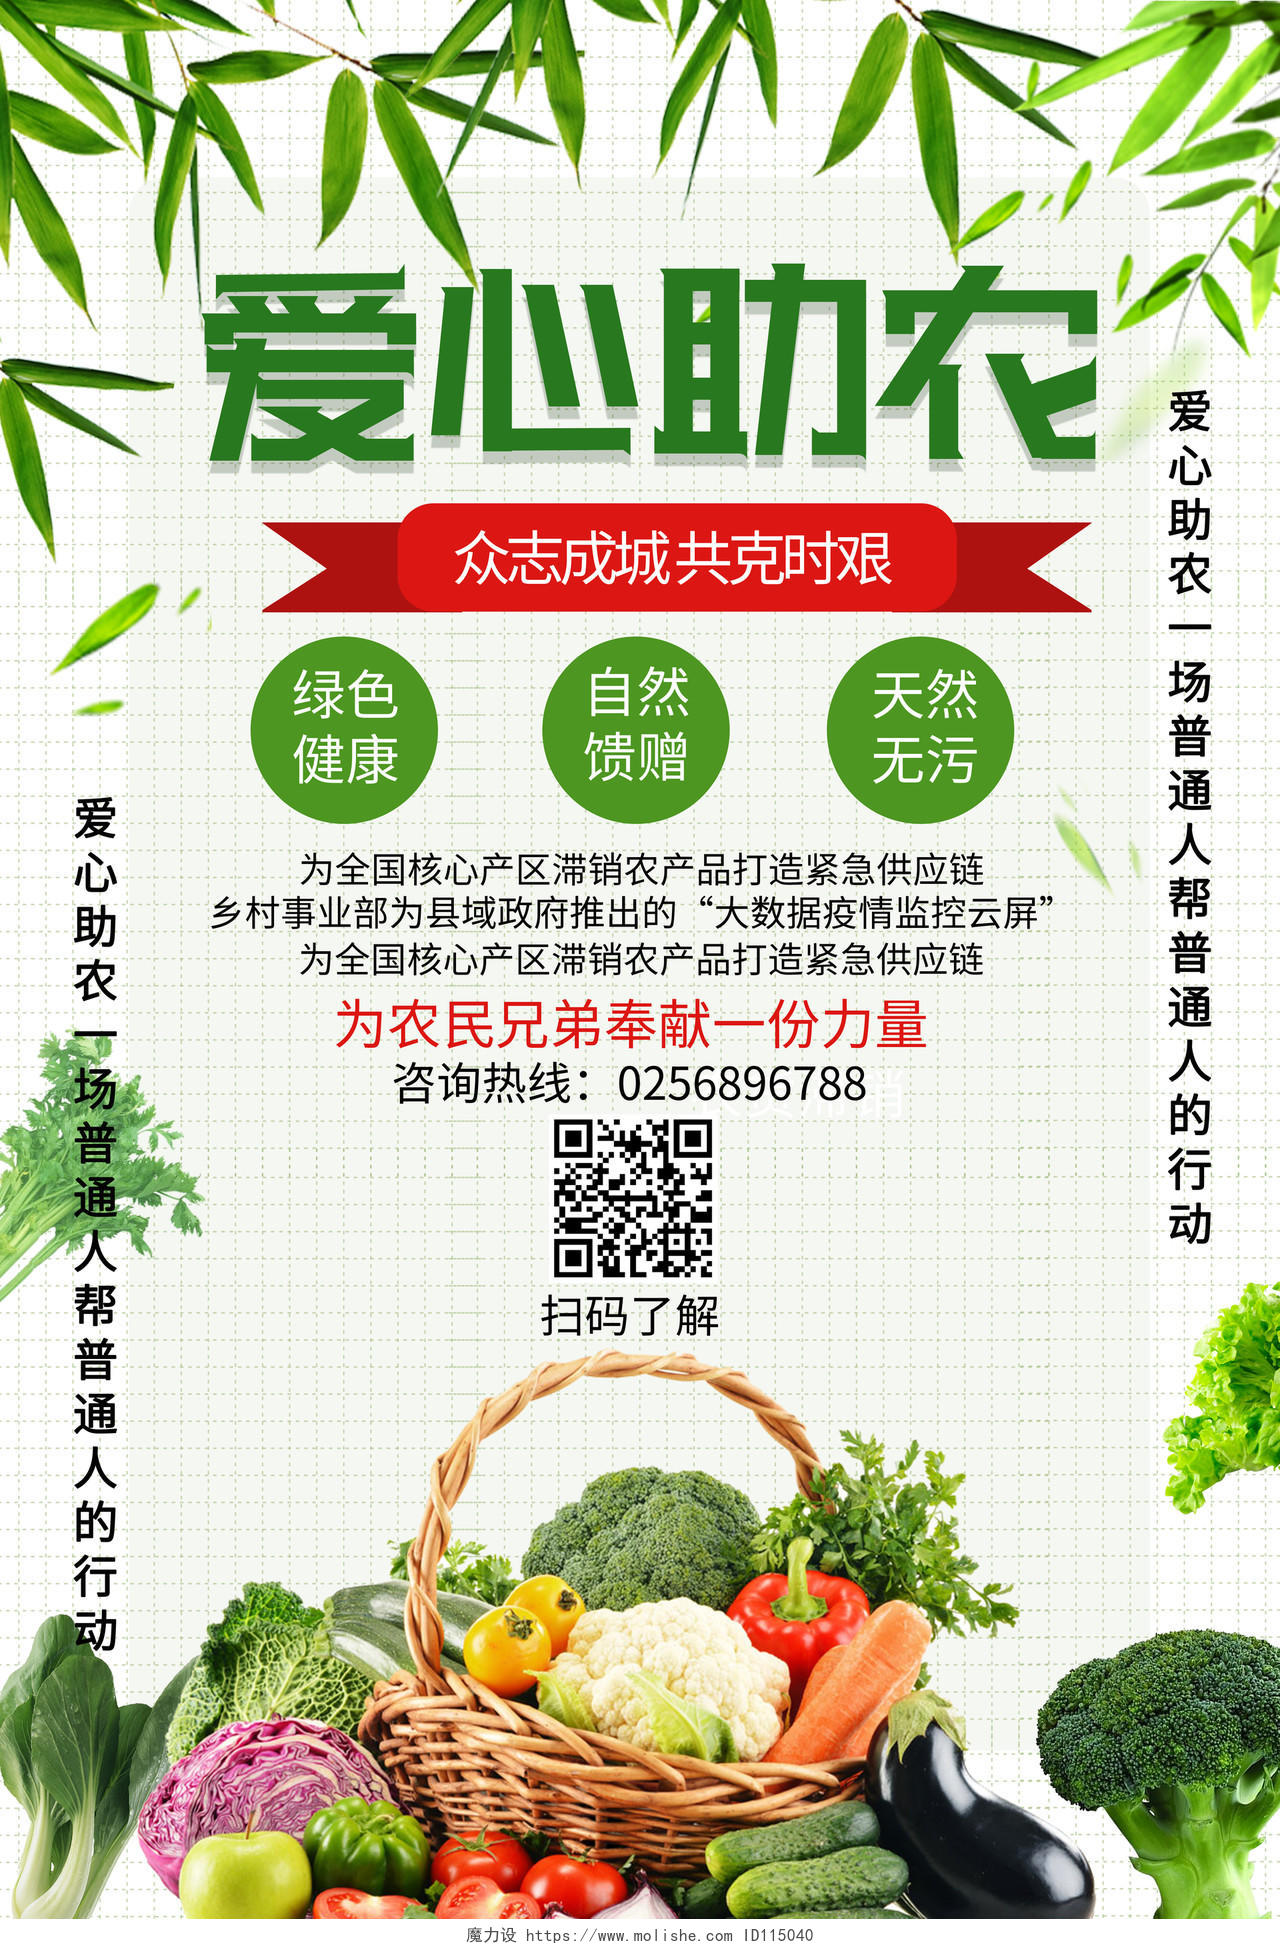 绿色创意大气爱心助农生鲜蔬菜爱心助农慈善公益海报